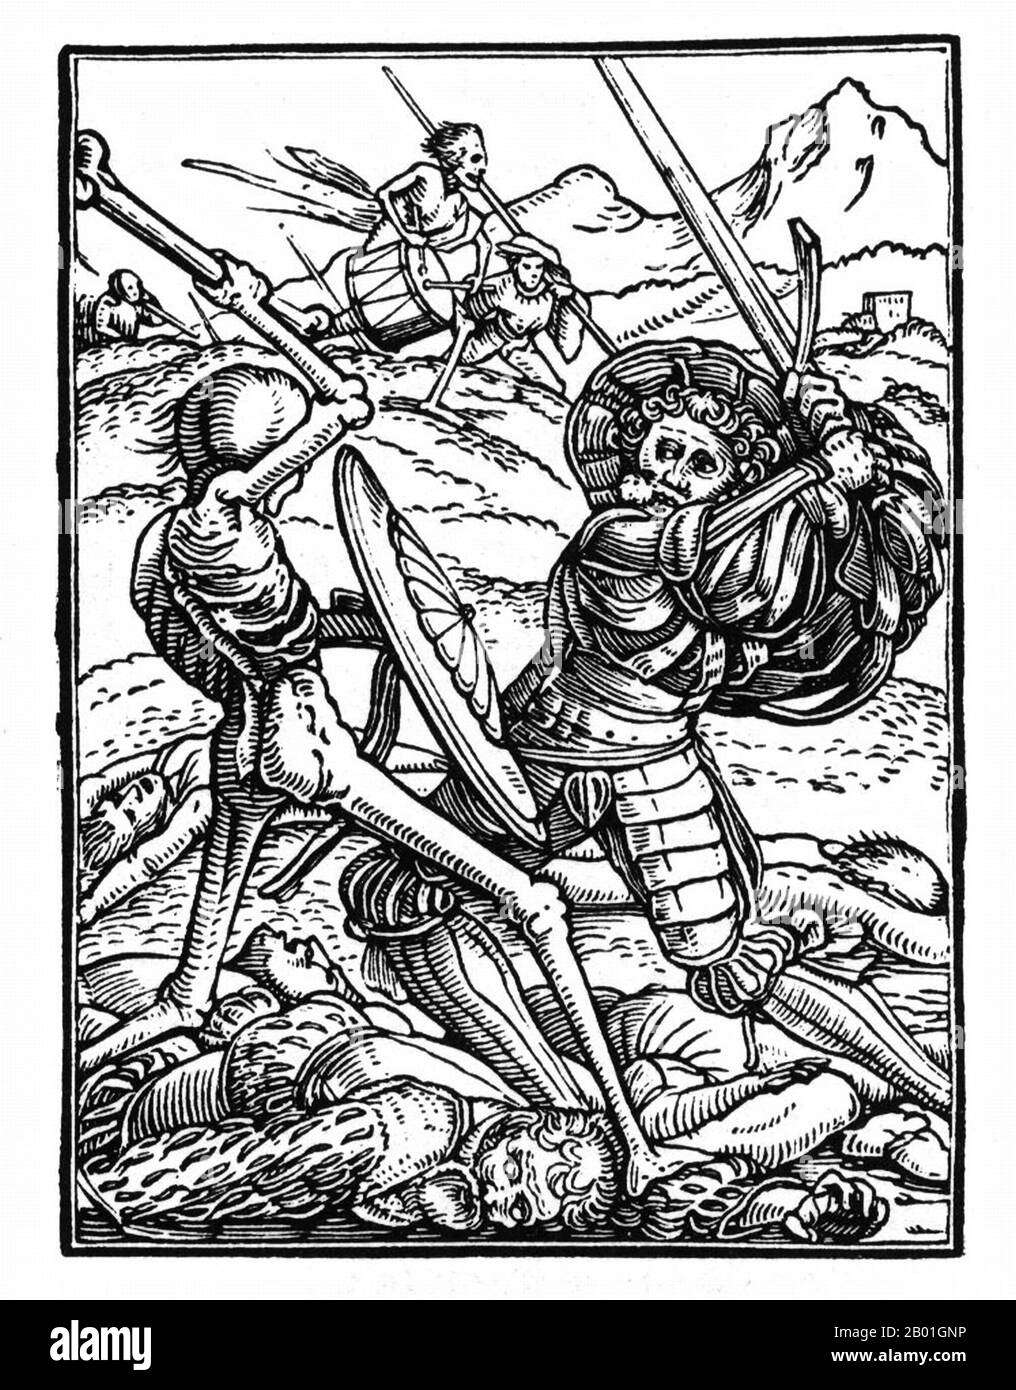 Deutschland: Eine Szene aus dem "Tanz des Todes" von Hans Holbein dem Jüngeren (ca. 1497-1543), 16. Jahrhundert. Dies ist eine von einer gefeierten Serie von kleinen Holzschnitten, die Holbein zum Thema Tod entworfen hat. Mit den Worten von Christian Rümelin: 'Der Tod wird in mehreren Darstellungen dargestellt, angefangen vom mörderischen Agenten (des Mönchs, des Kaufmanns, chandlers, des reichen Mannes, des Ritters, graf und Adliger) zum Warnkommentator (des Papstes, Kaisers, Kardinals, Richters, Stadtrat, Rechtsanwalt und Prediger)“. Stockfoto